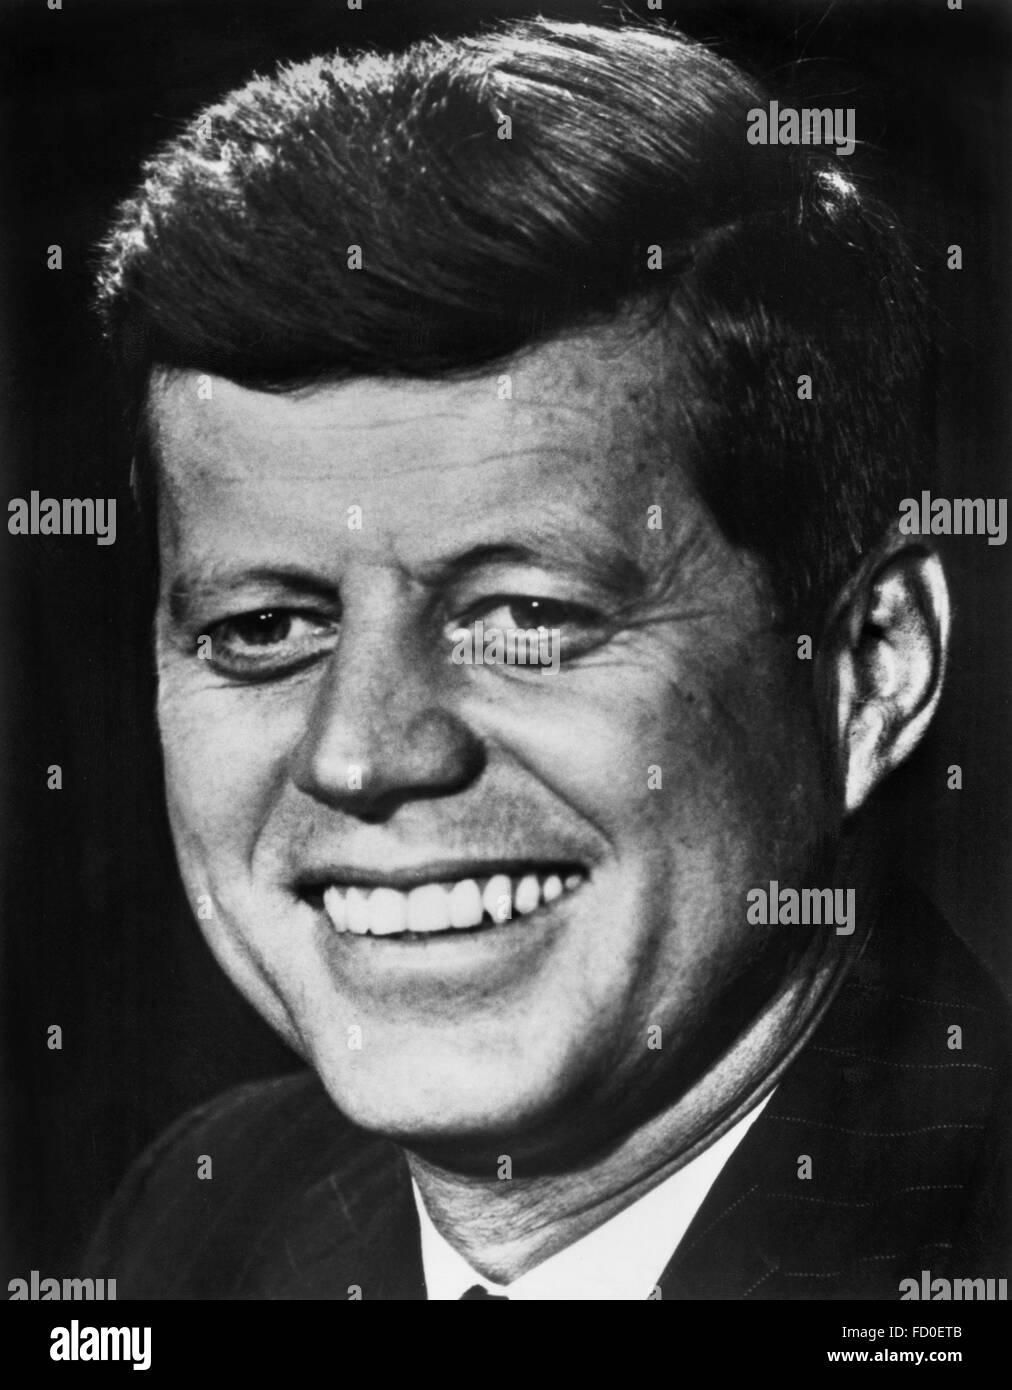 John F Kennedy, portrait du 35e président des USA, 1962 Banque D'Images